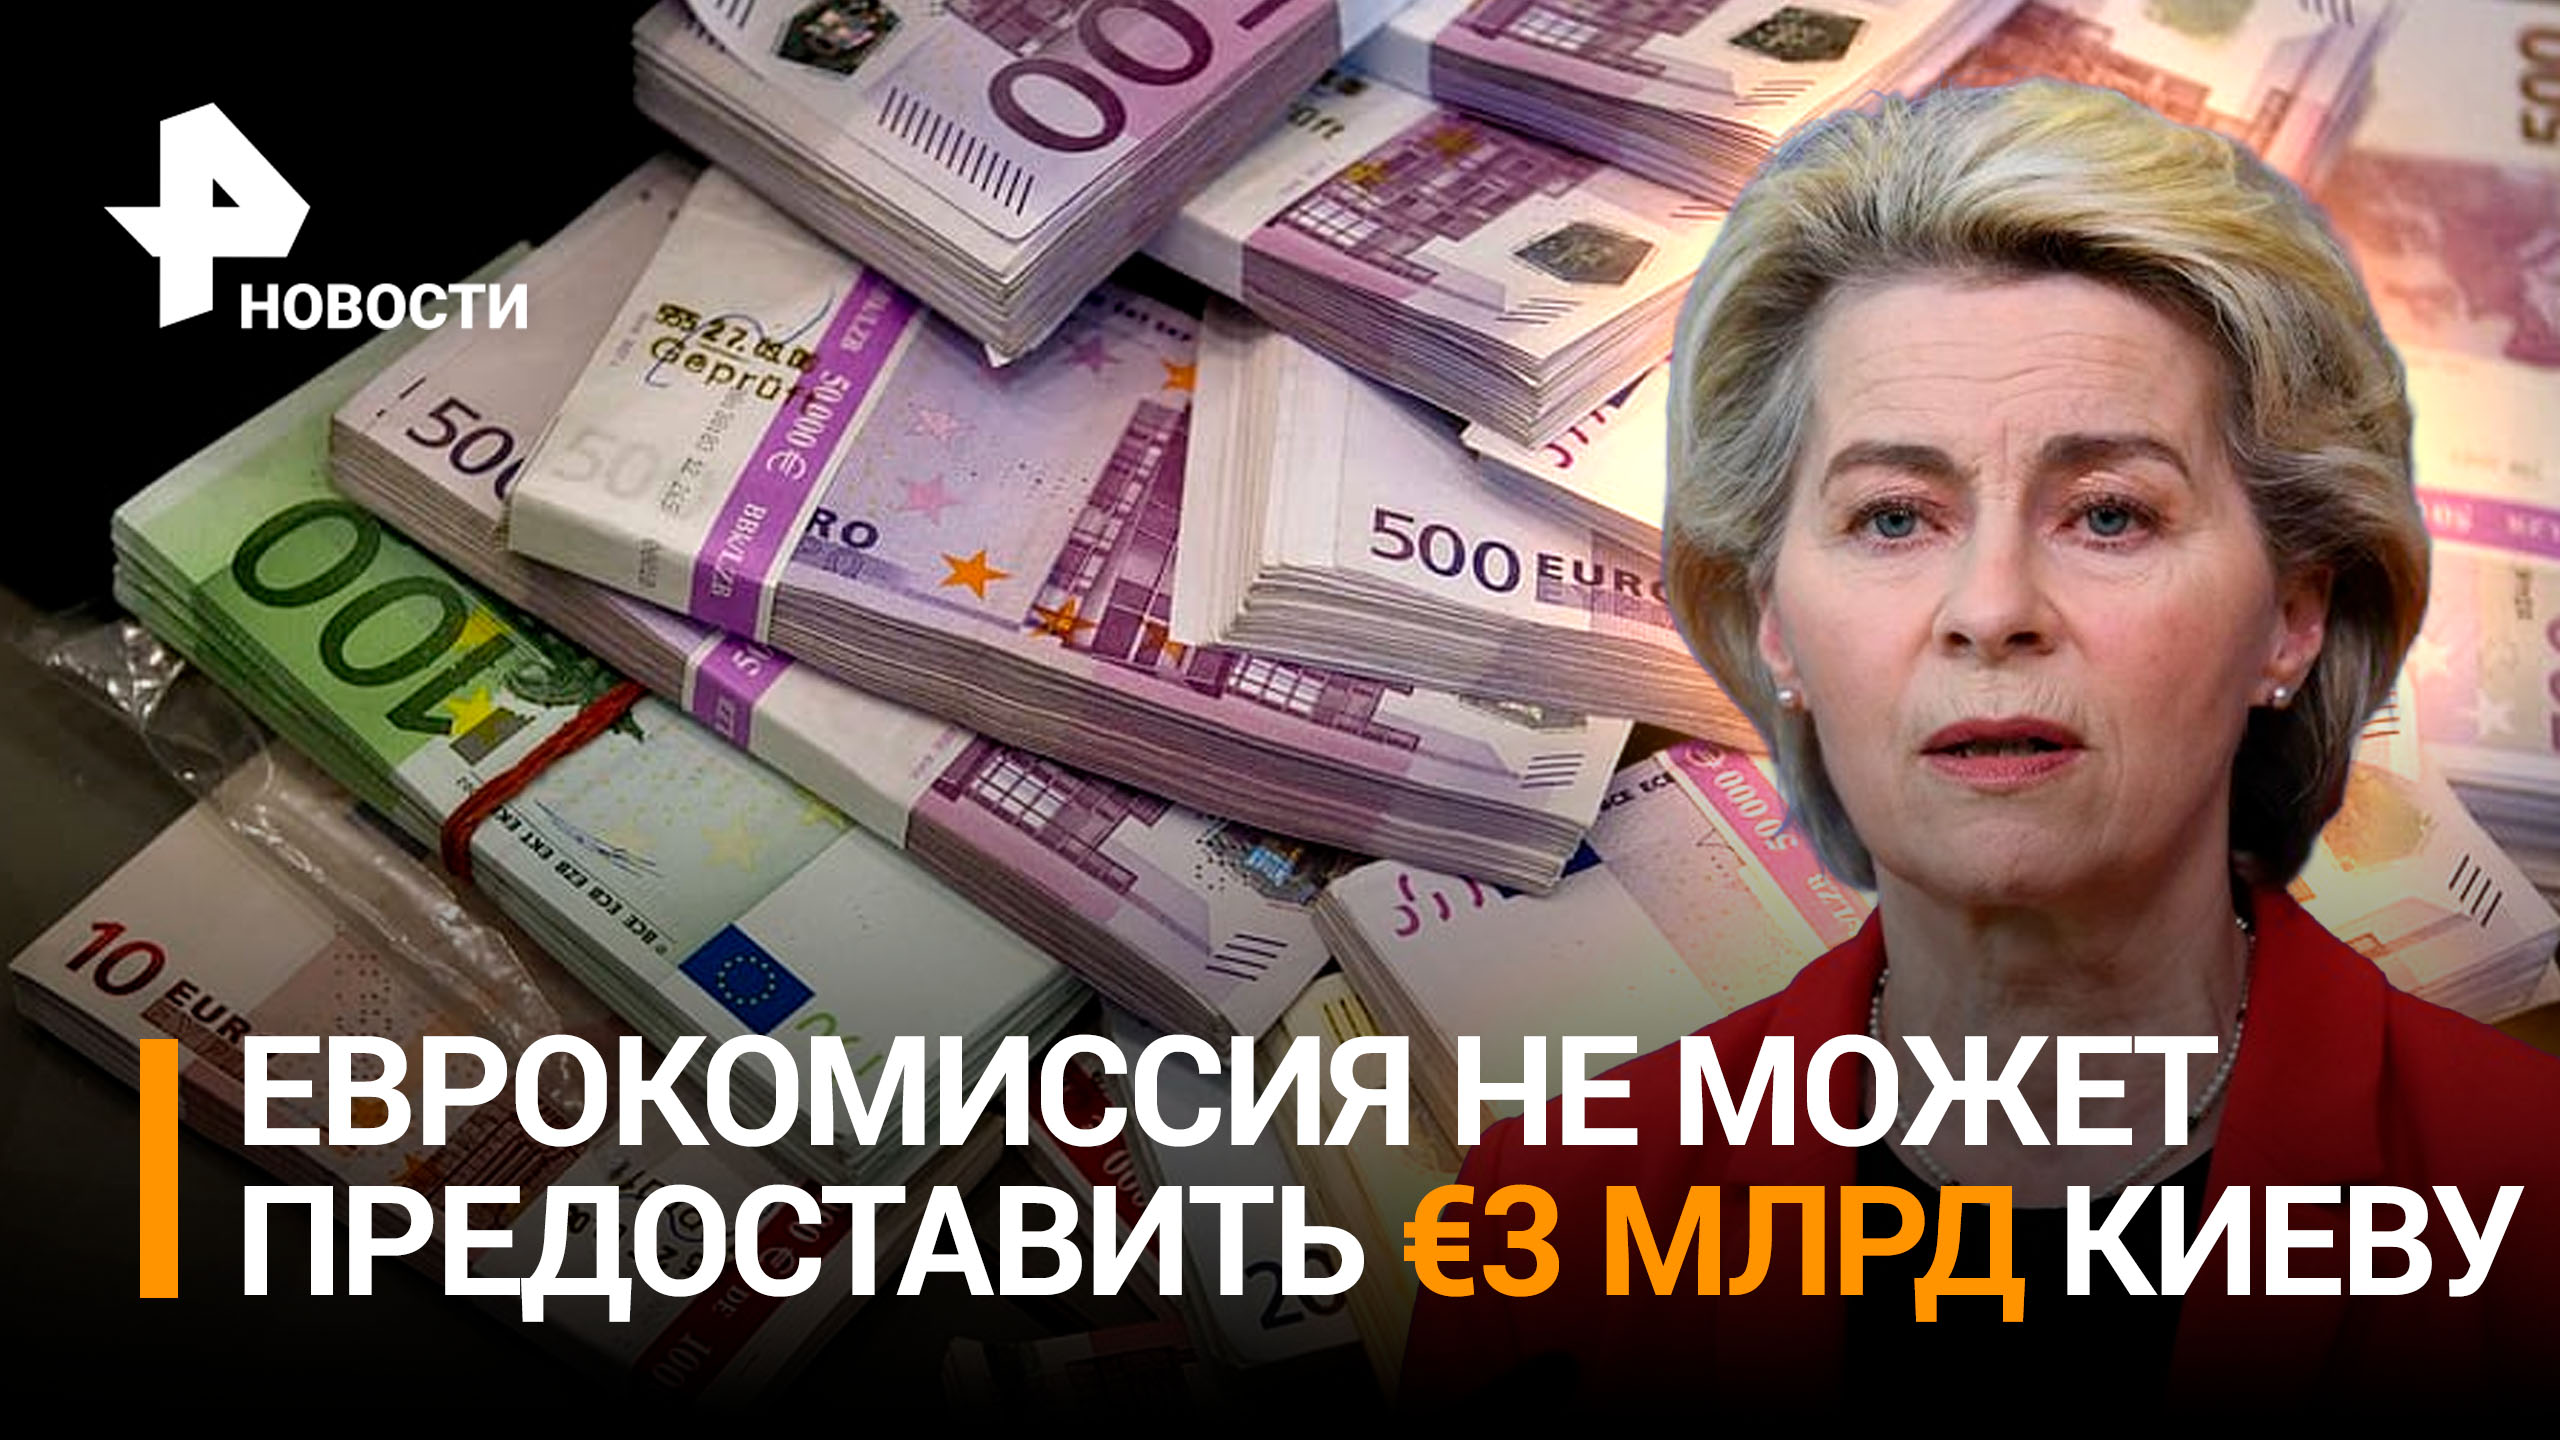 ЕС не сможет выделить Киеву обещанные 3 миллиарда евро / РЕН Новости